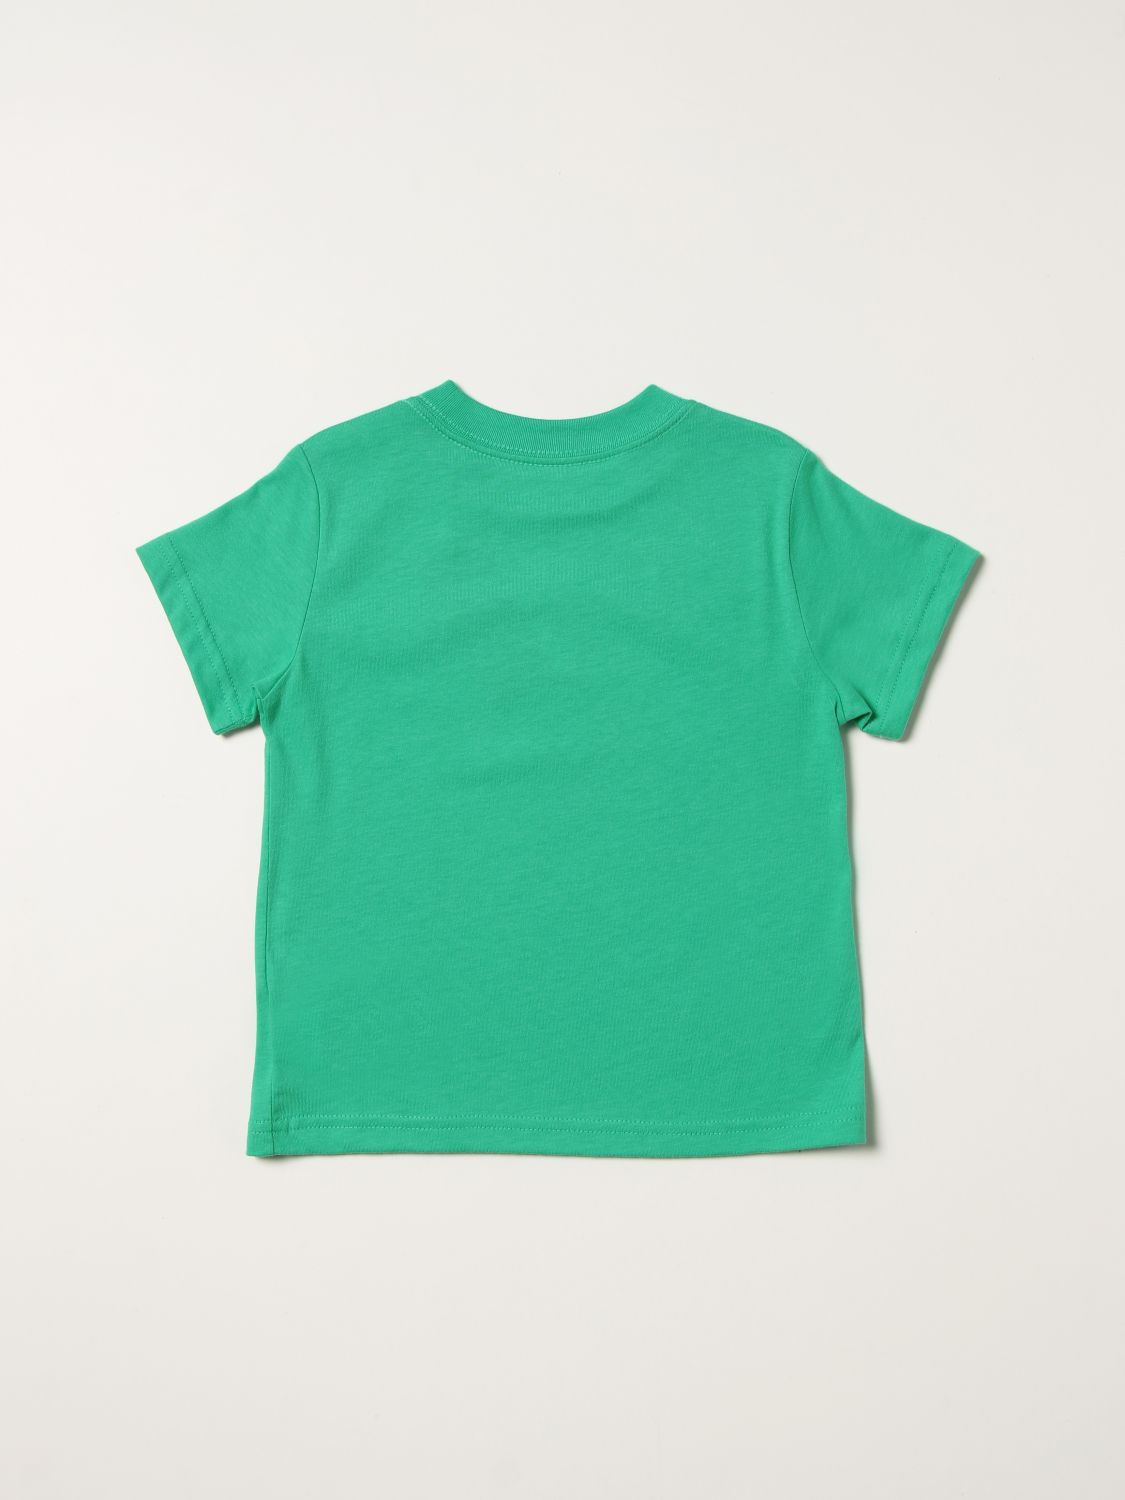 Tシャツ ポロラルフローレン: Tシャツ Polo Ralph Lauren 男の子 グリーン 2